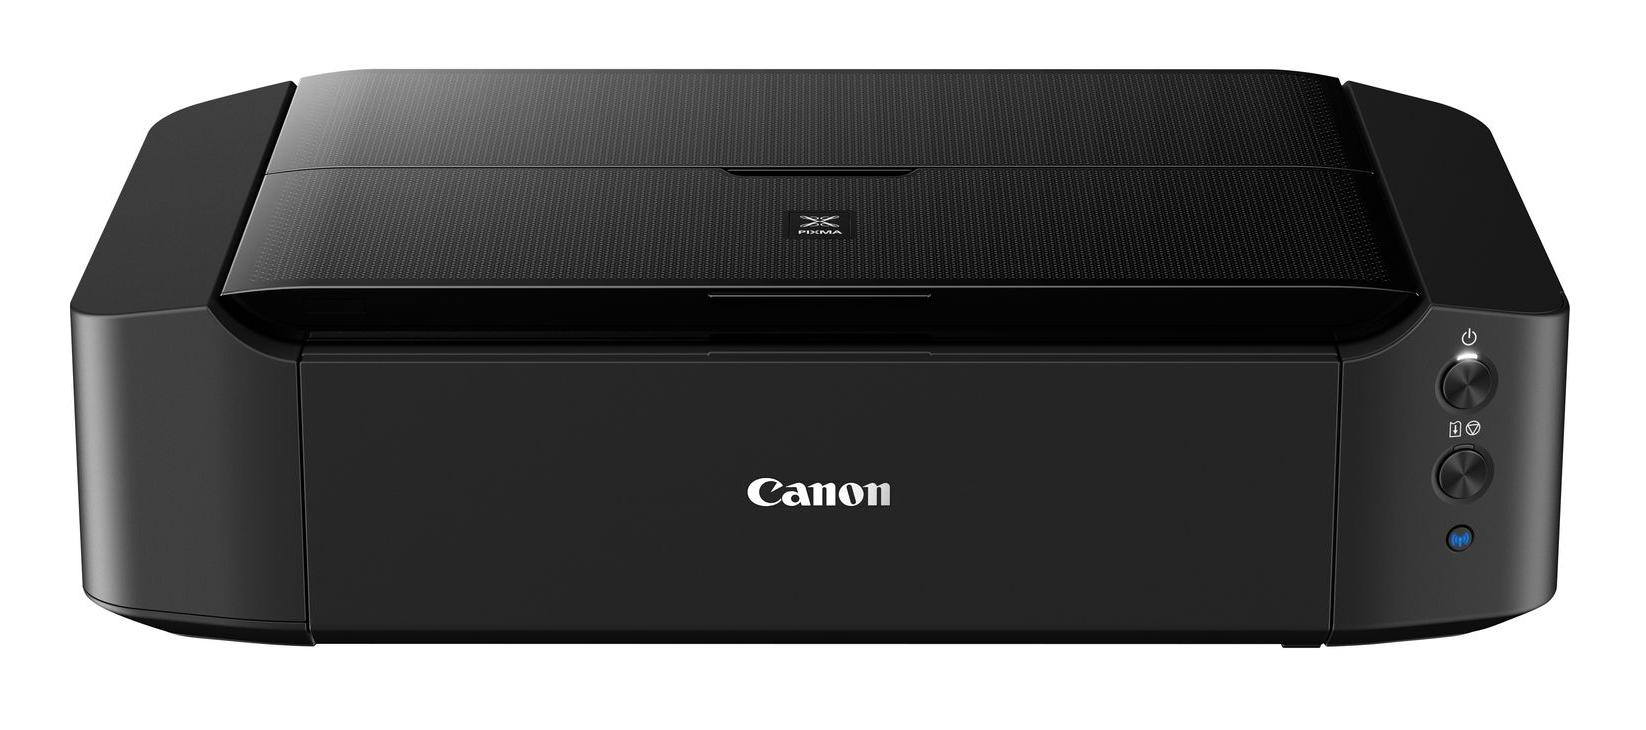 Canon PIXMA iP8750 photo printer Inkjet 9600 x 2400 DPI A3+ (330 x 483 mm) Wi-Fi